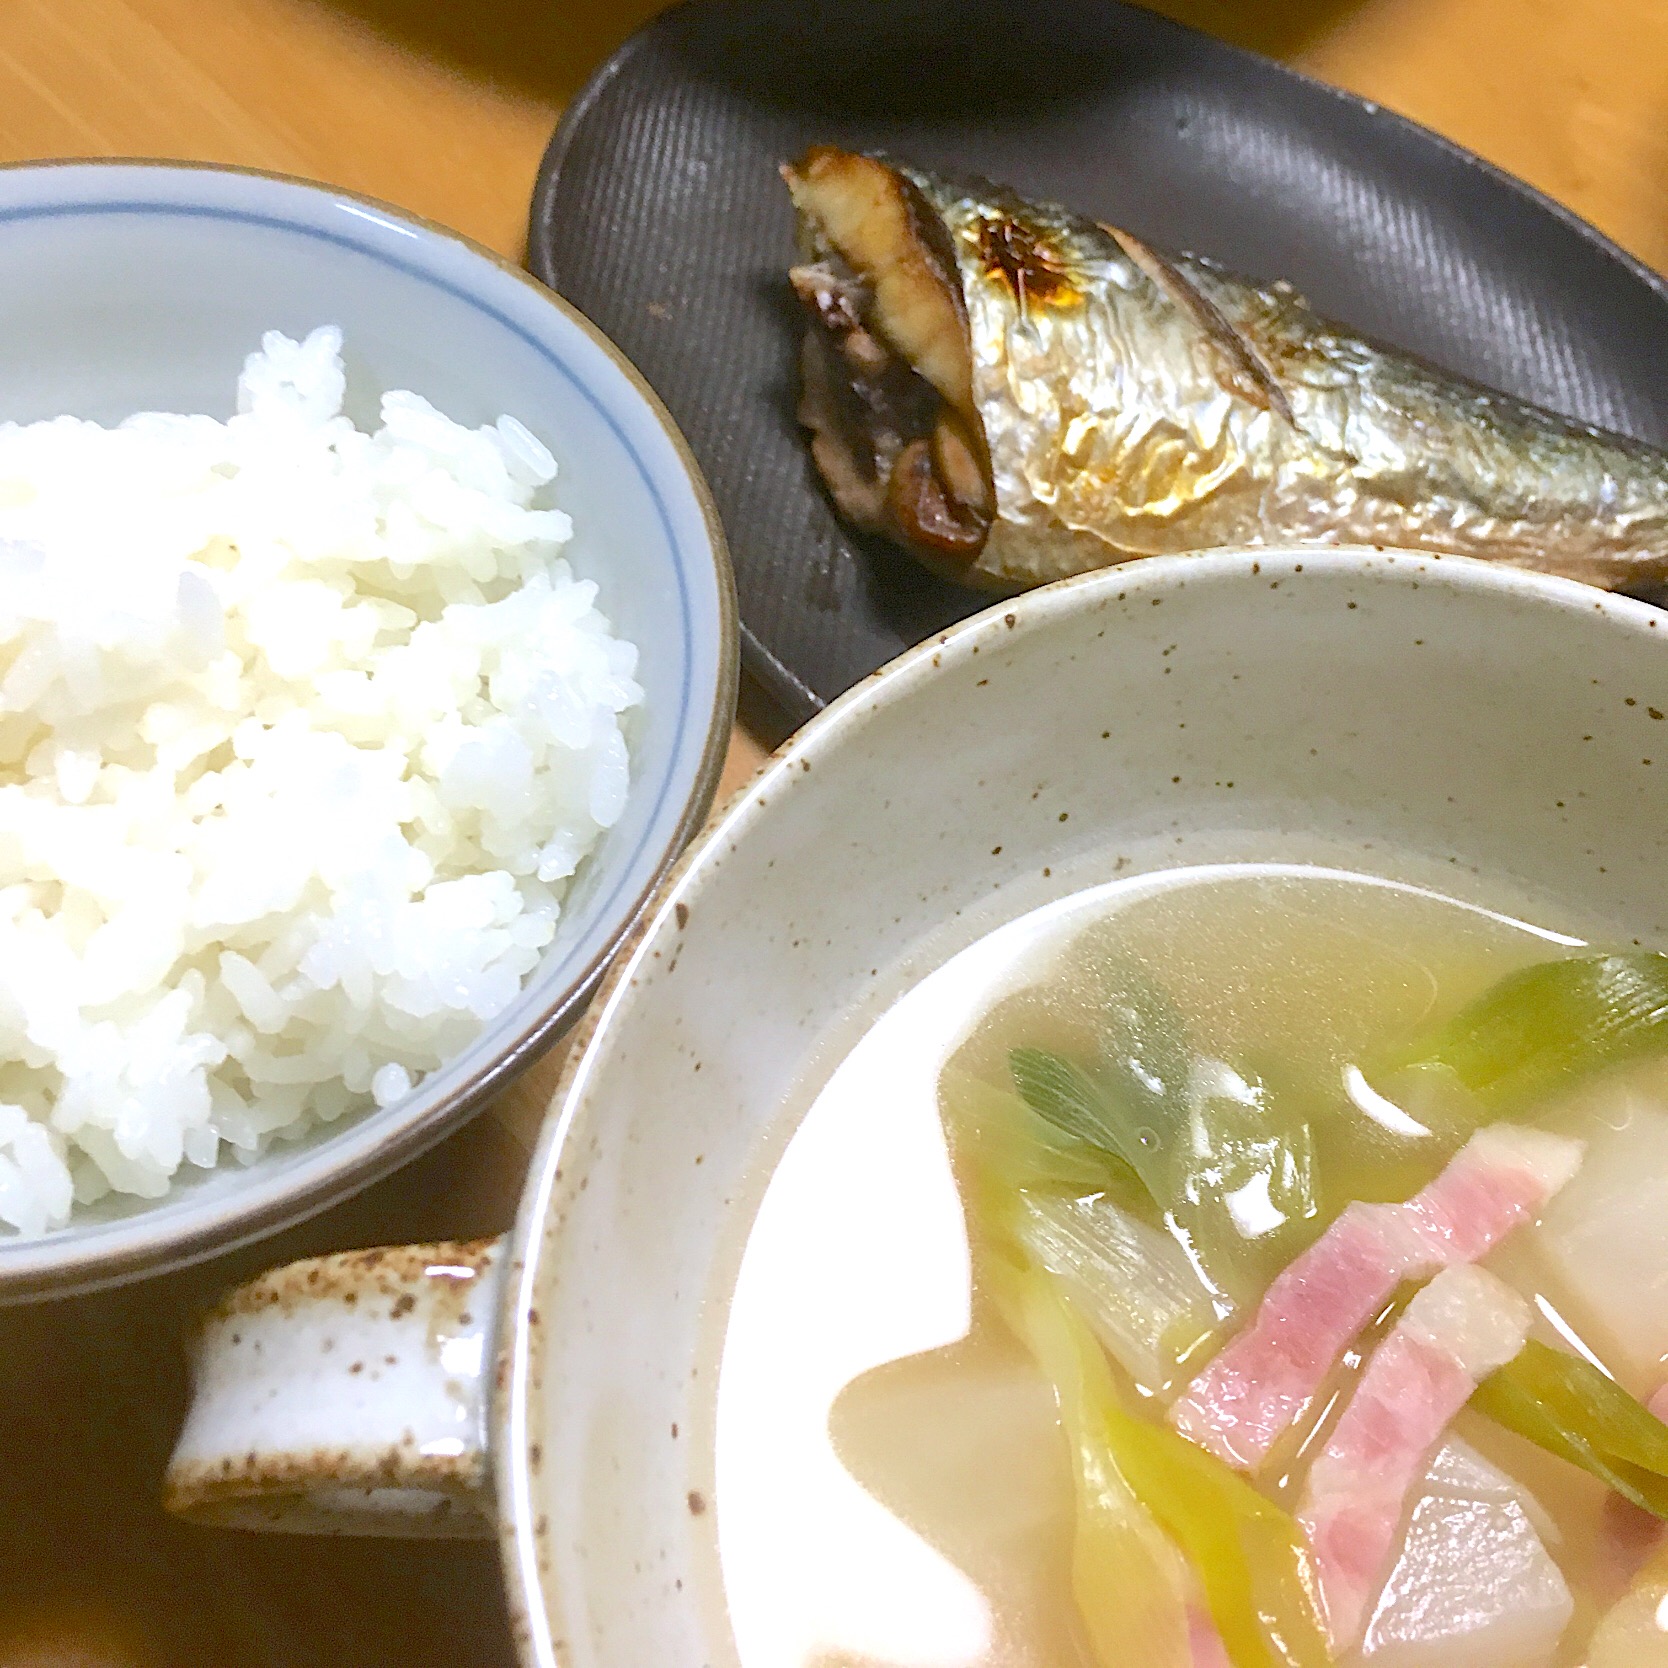 昨日の夕食
#ニシンの塩焼き
#カブとネギのスープ
#ご飯
2019.1.8